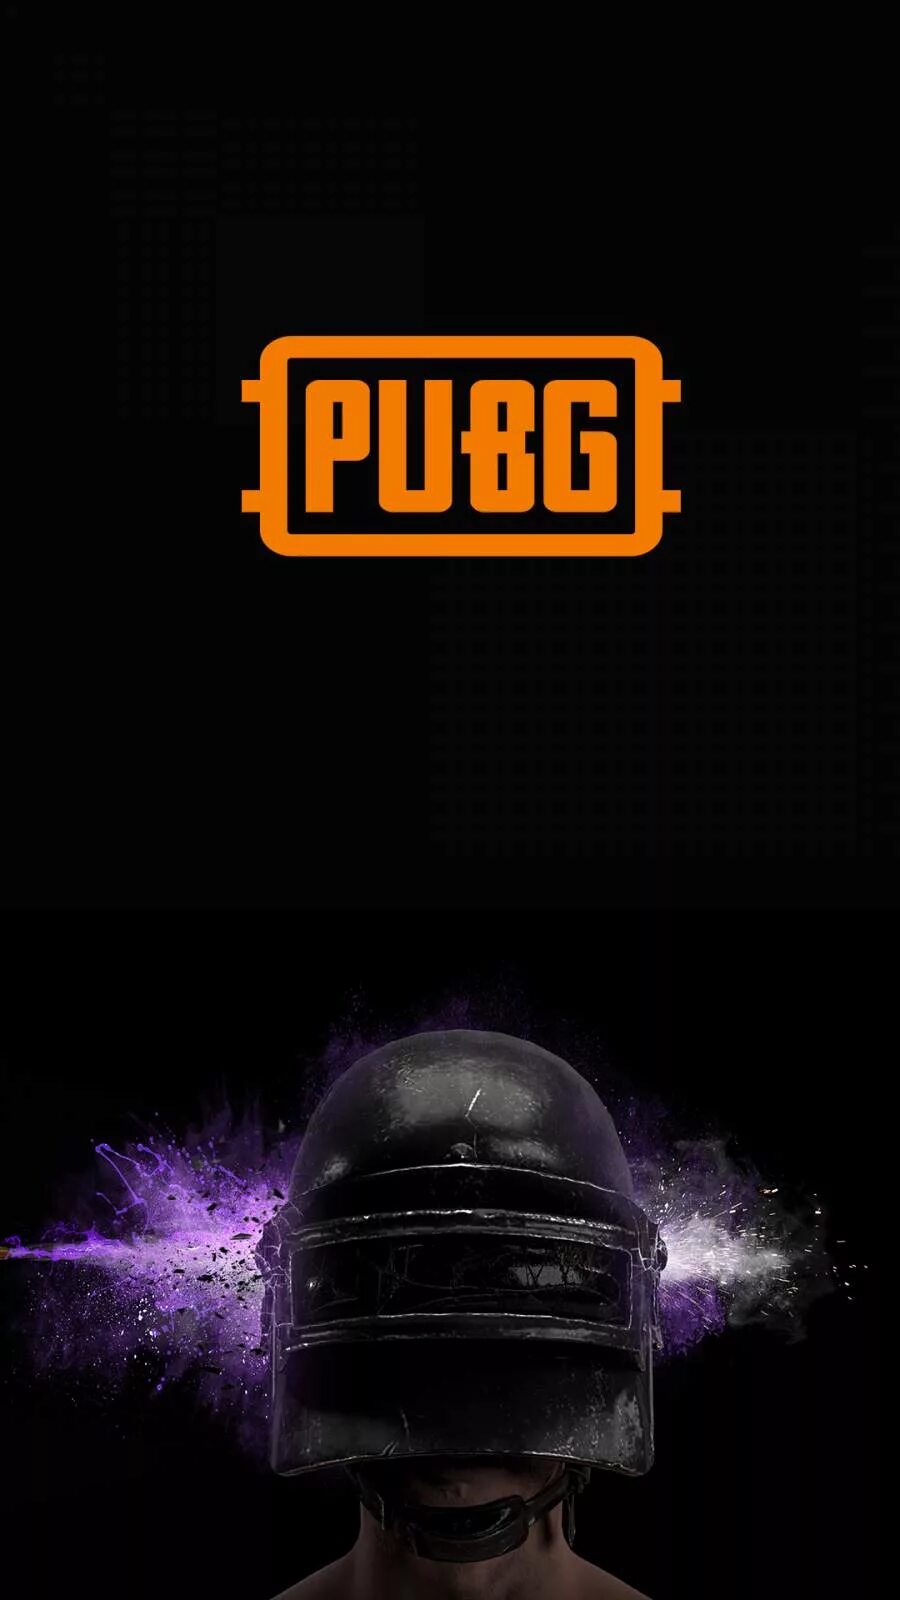 PUBG logo. PUBG mobile logo 4k. Cosmos логотип PUBG mobile. PUBG mobile надпись на черном фоне.